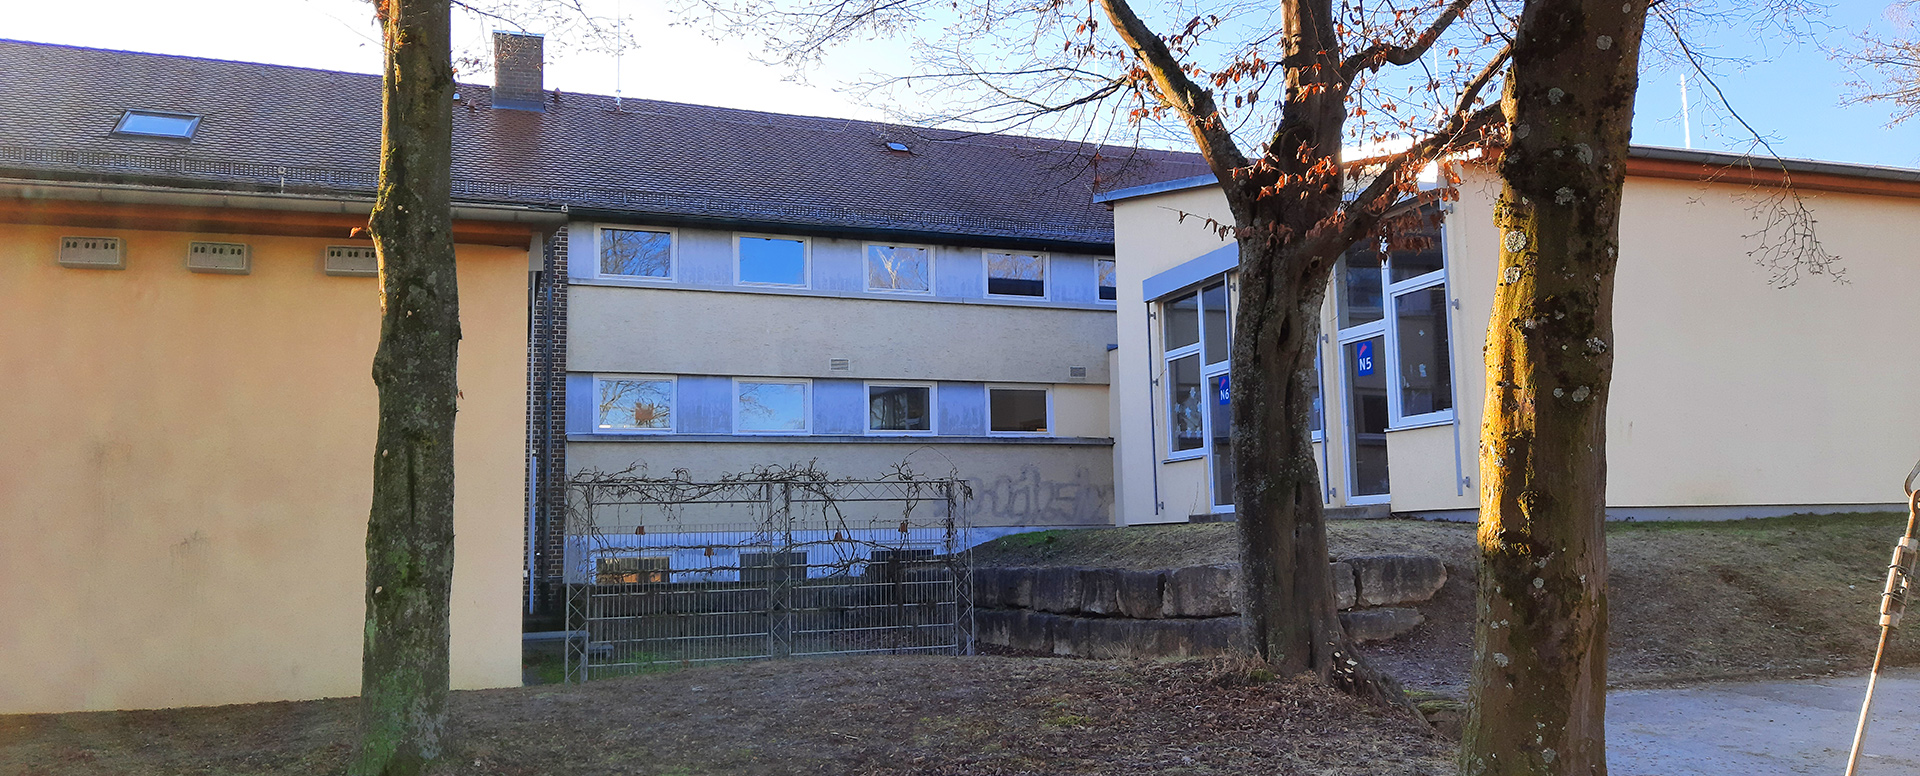 Grundschule Haldenschule Rommelshausen - Sliderbild Schulgebäude